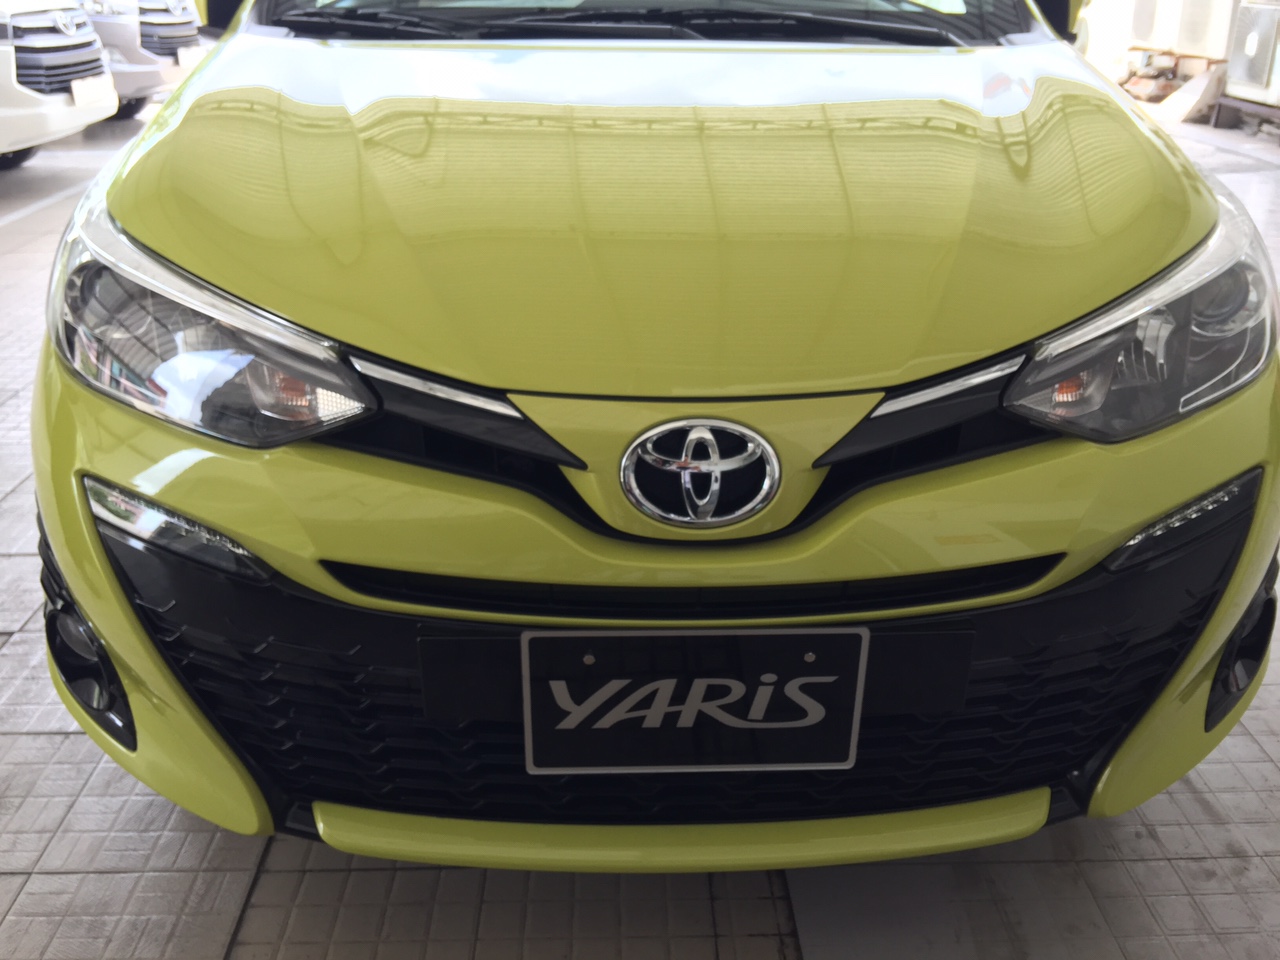 Sau khi xuất hiện tại Thái Lan, giờ đây đến lượt Singapore là thị trường tiếp theo mà mẫu xe hạng B của Toyota